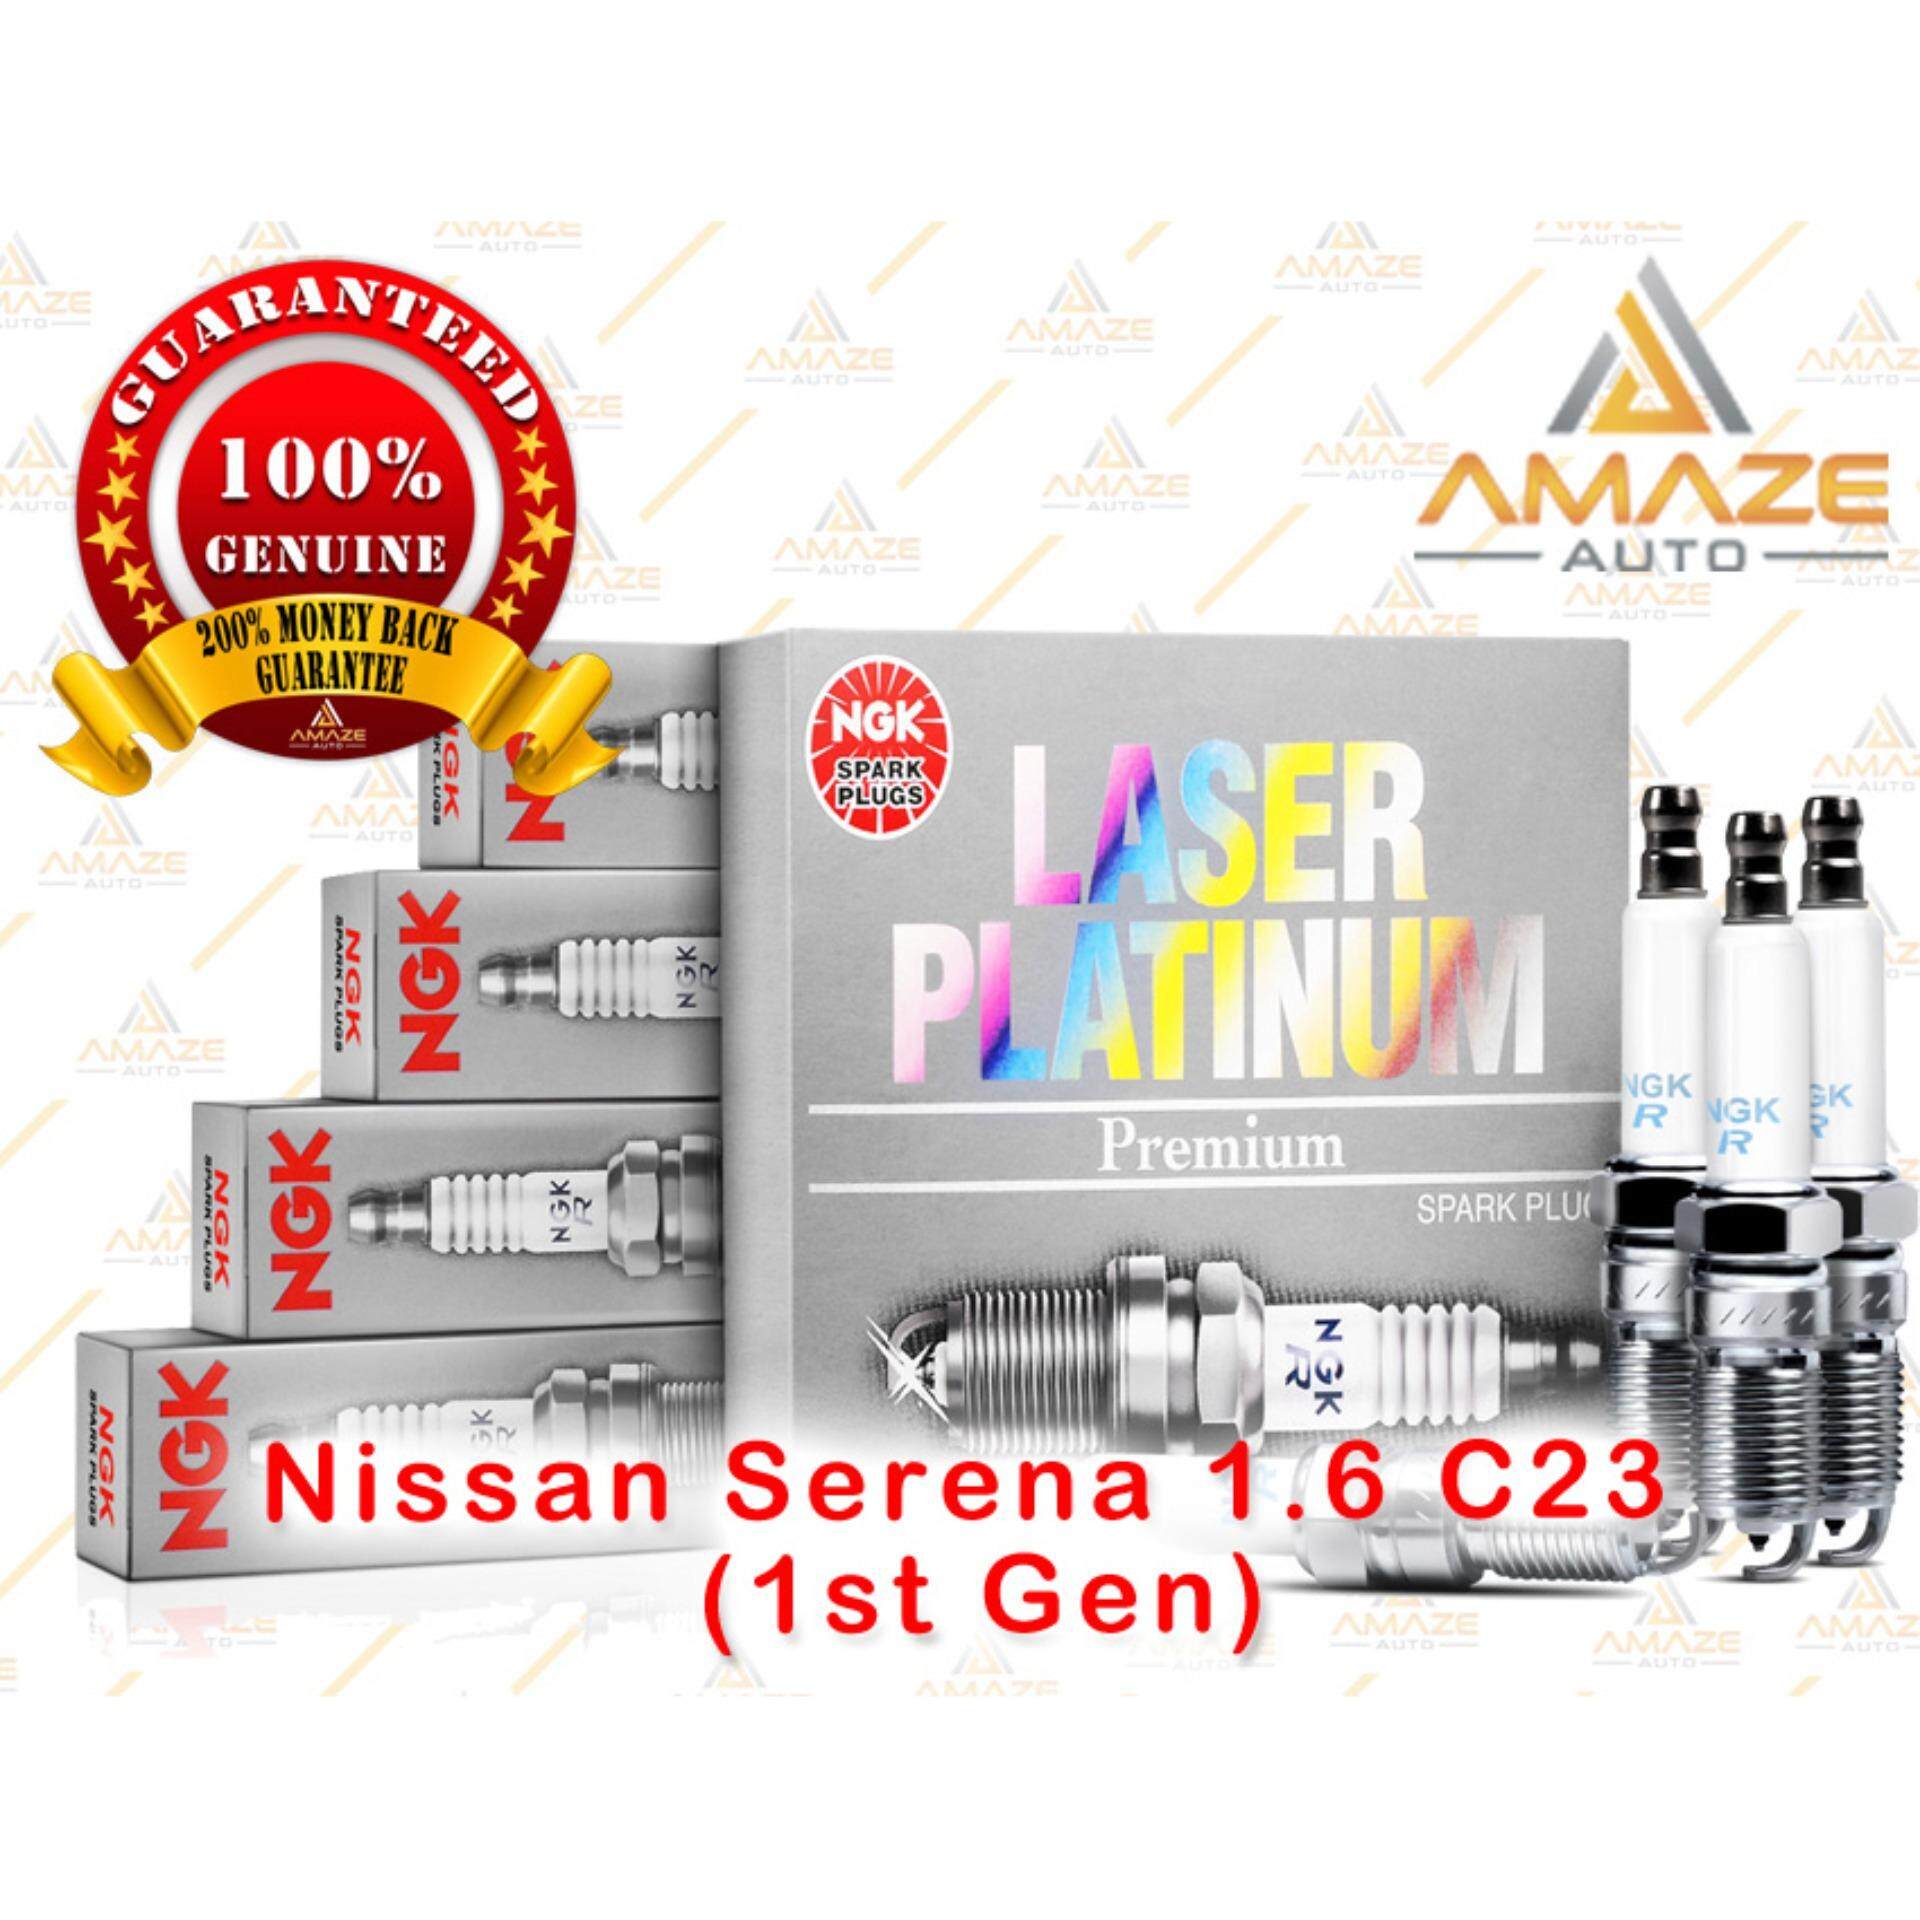 NGK Laser Platinum Spark Plug for Nissan Serena 1.6 C23 (1st Gen)